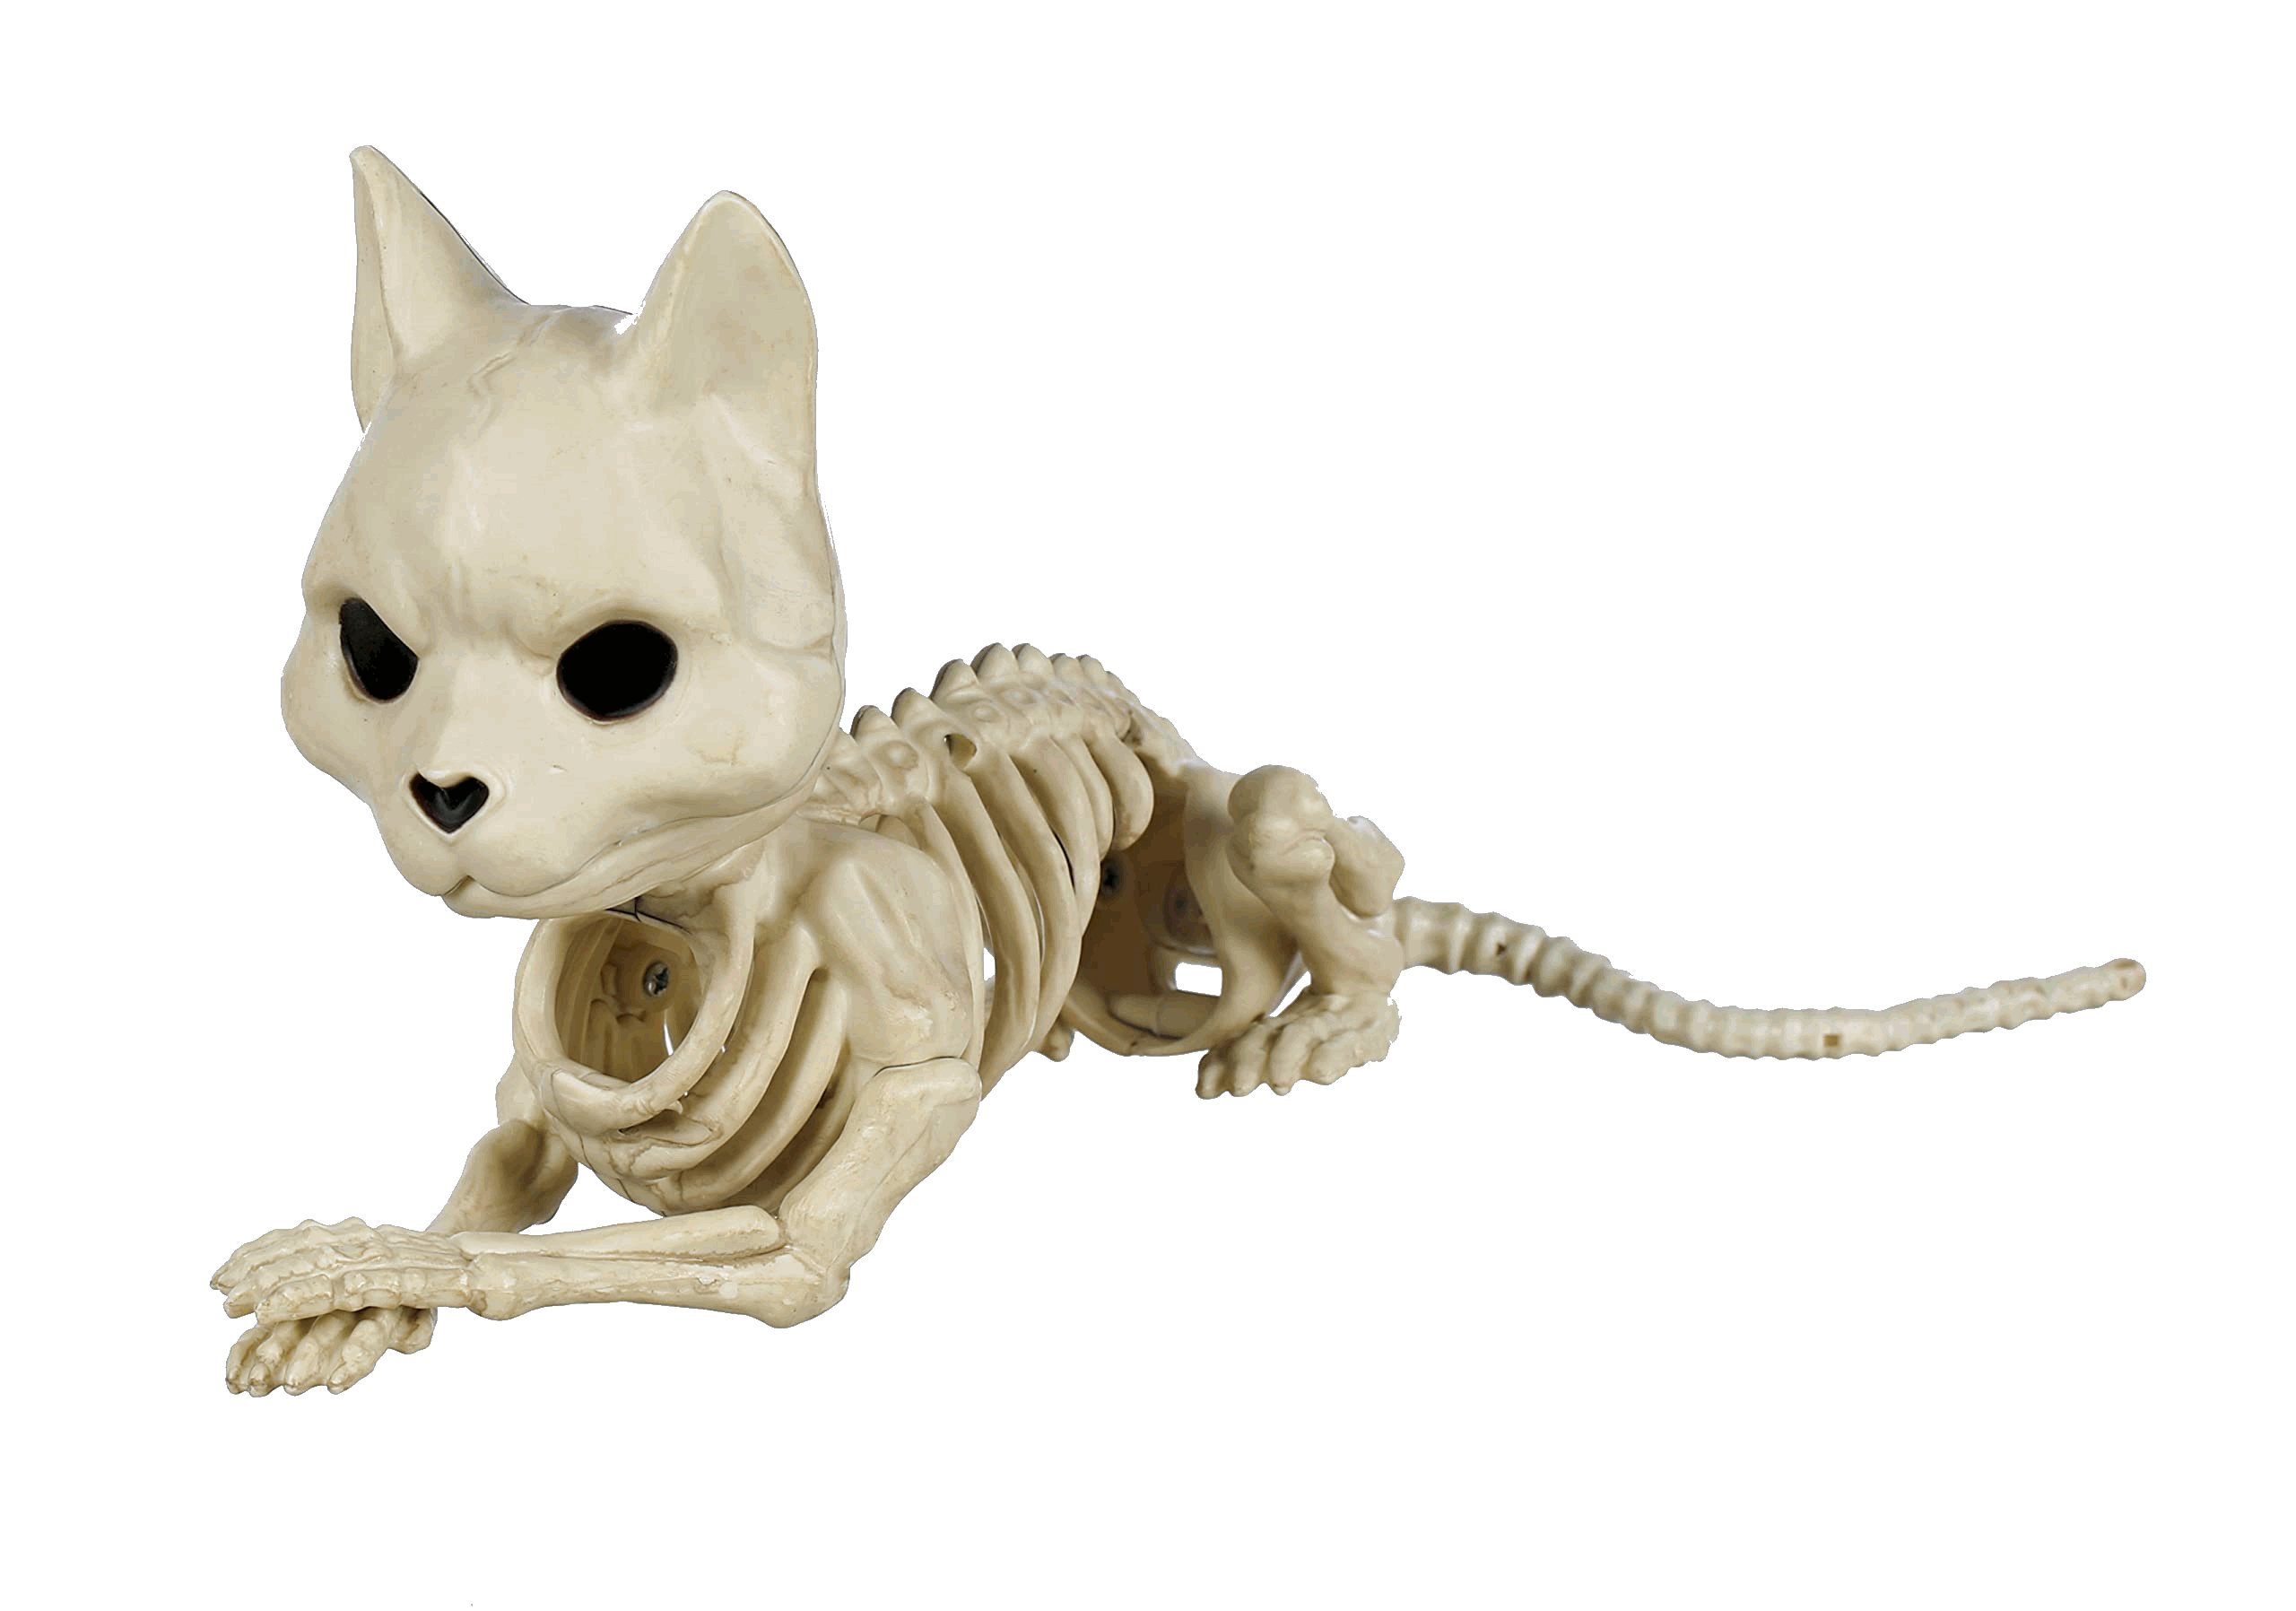 A skeletal cat prop for Halloween.